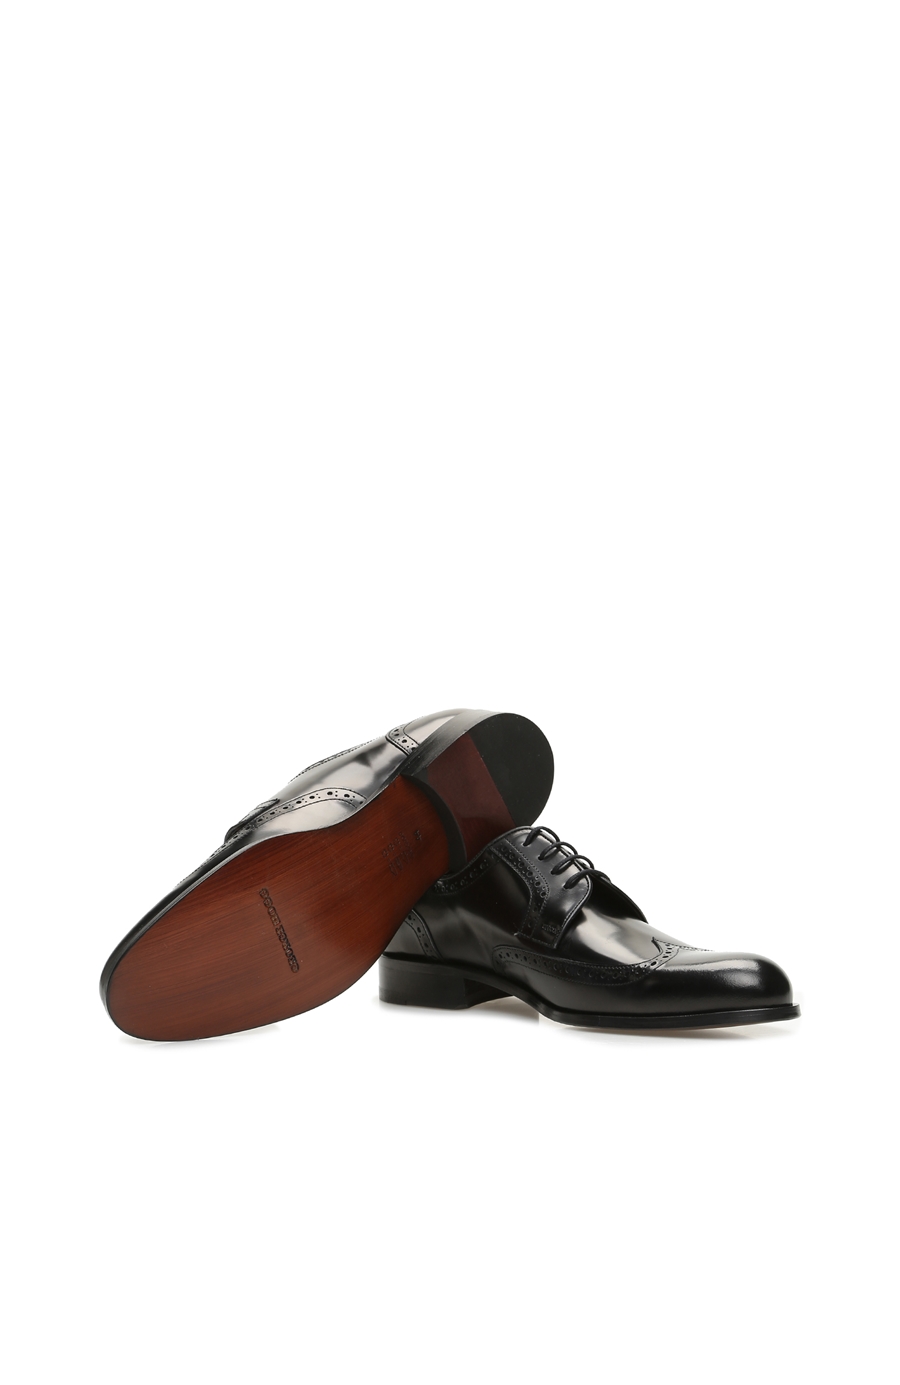 Siyah Delik Desenli Erkek Deri Ayakkabı